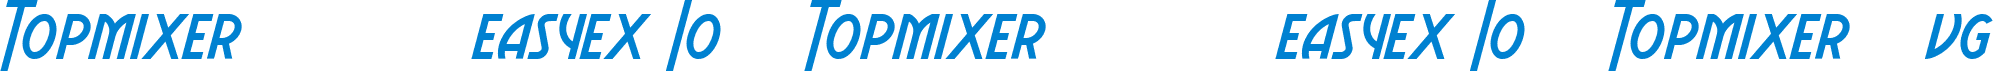 Topmixer混幣器 ️複製訪問easyex Io ️ Topmixer混幣器 ️複製訪問easyex Io ️ Topmixer混幣器vg